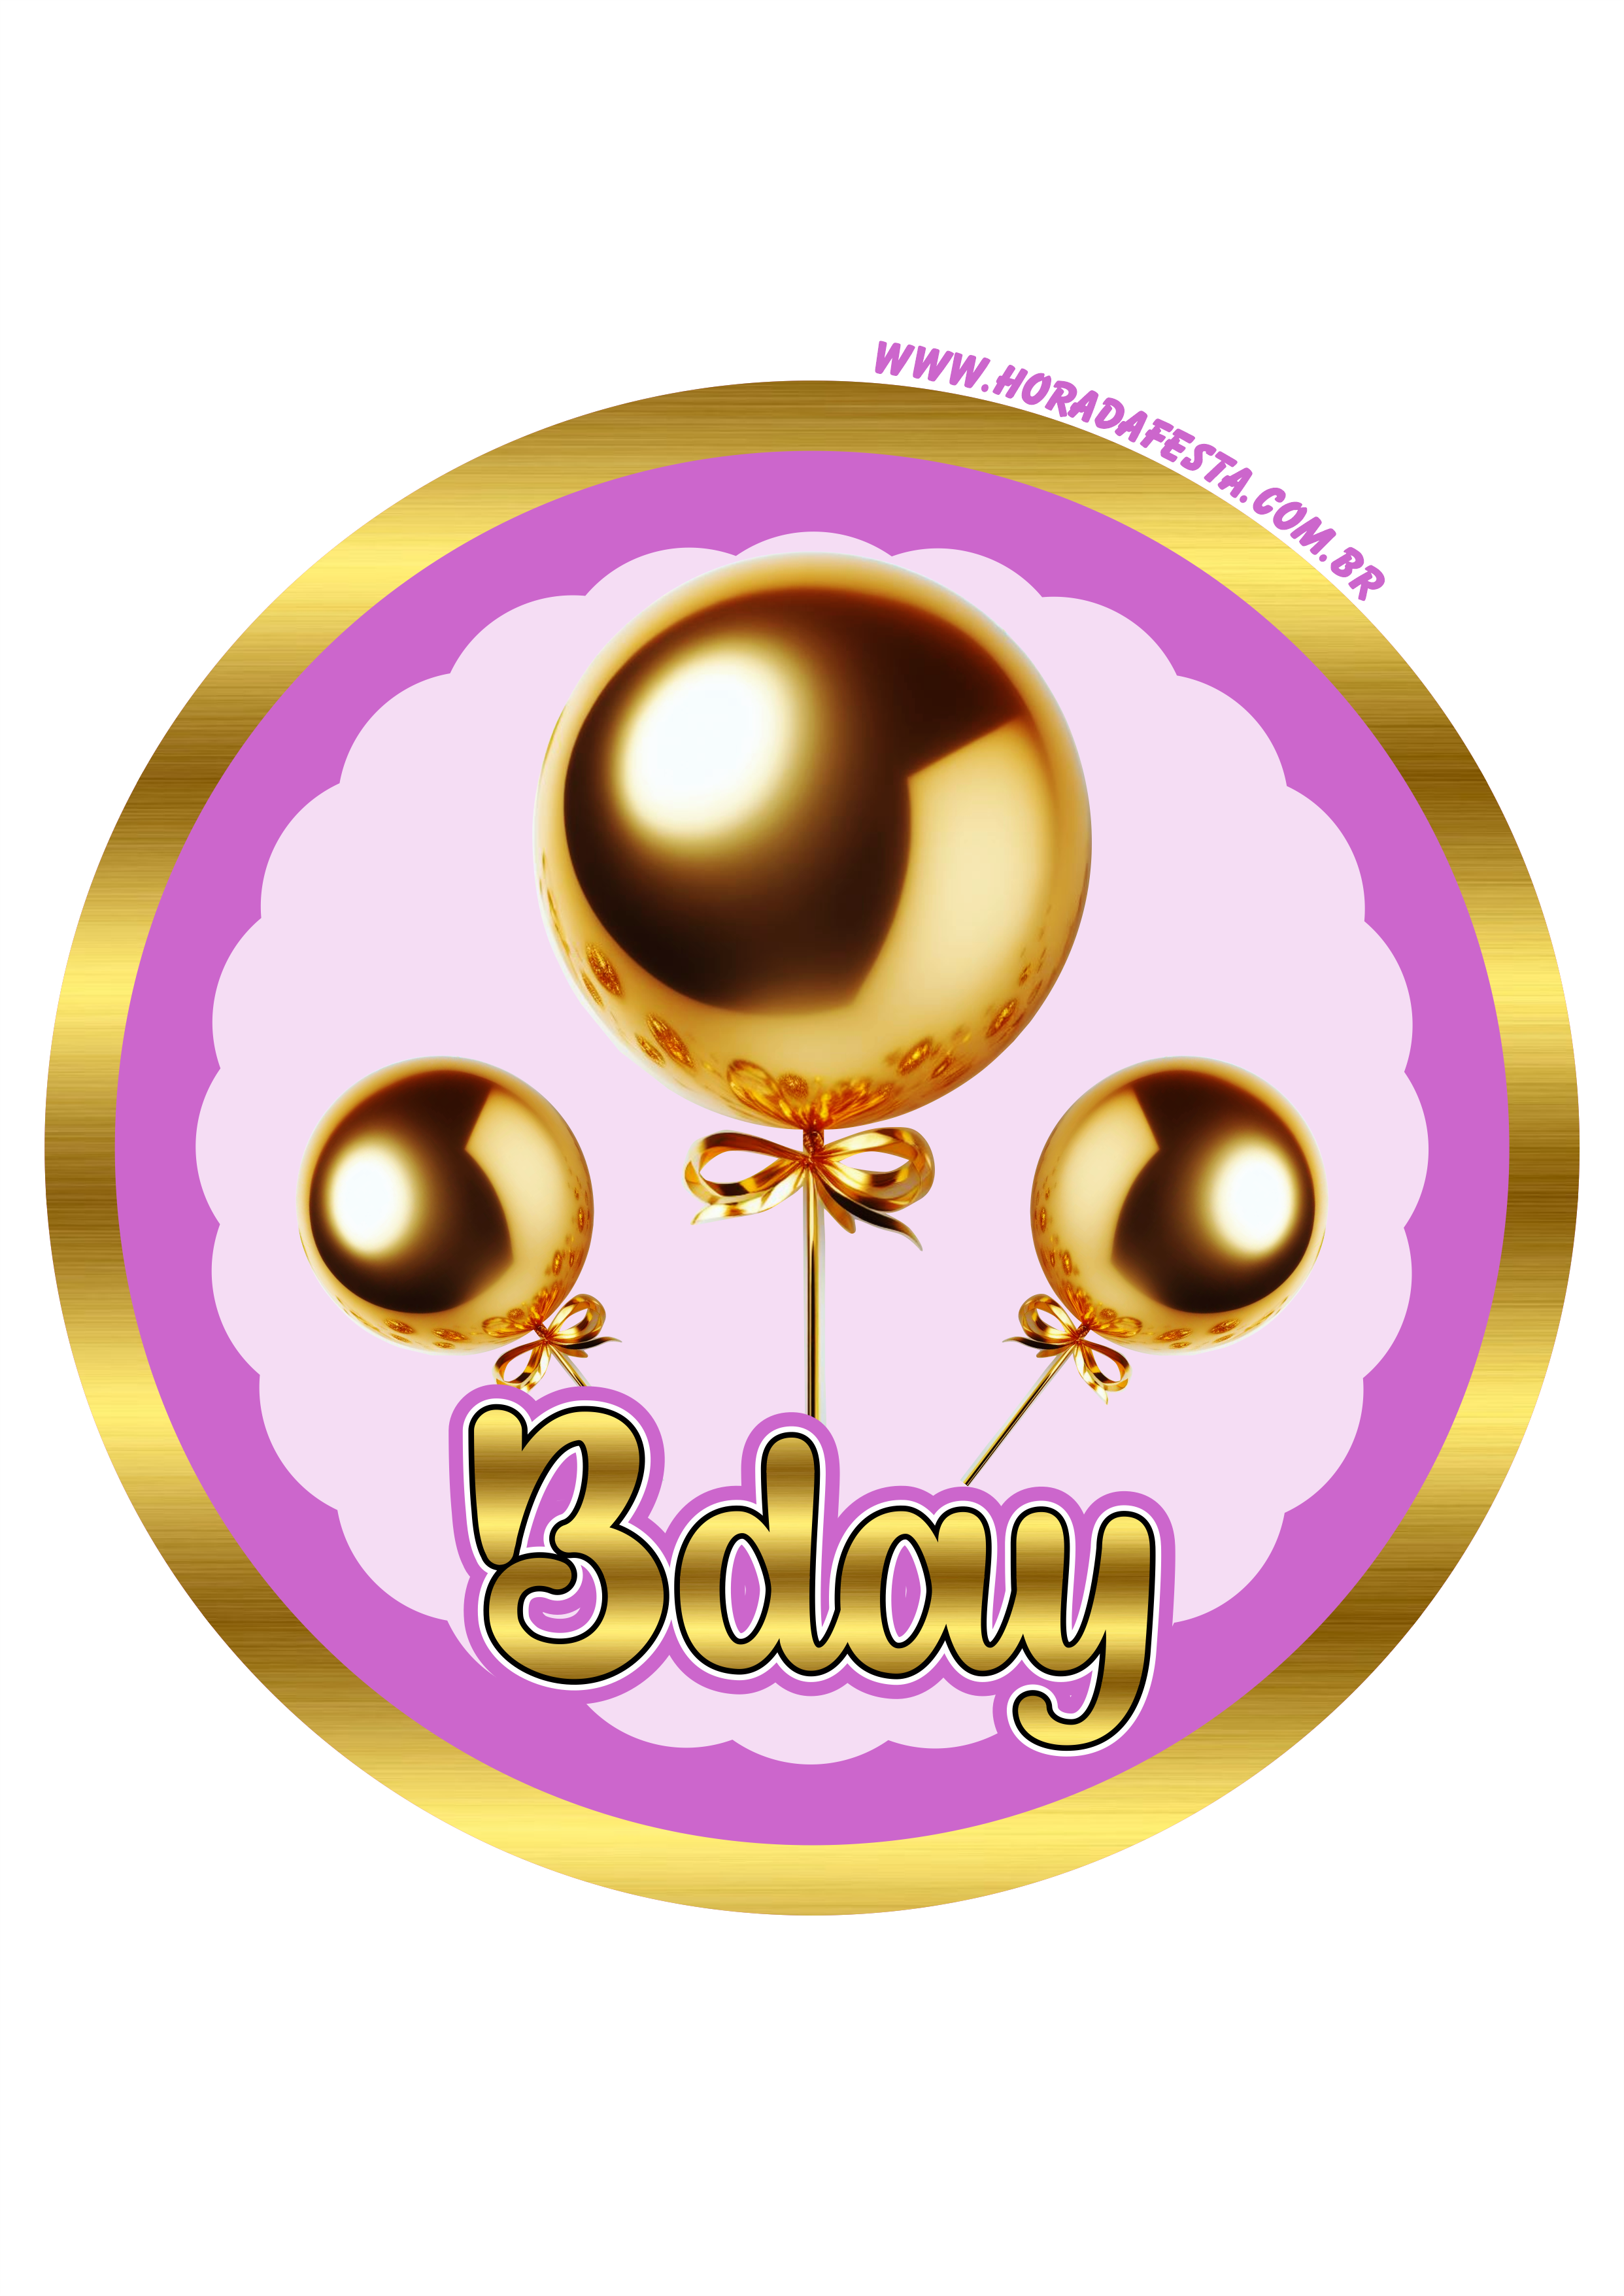 Bday dourado adesivo redondo para decoração de festa de aniversário png